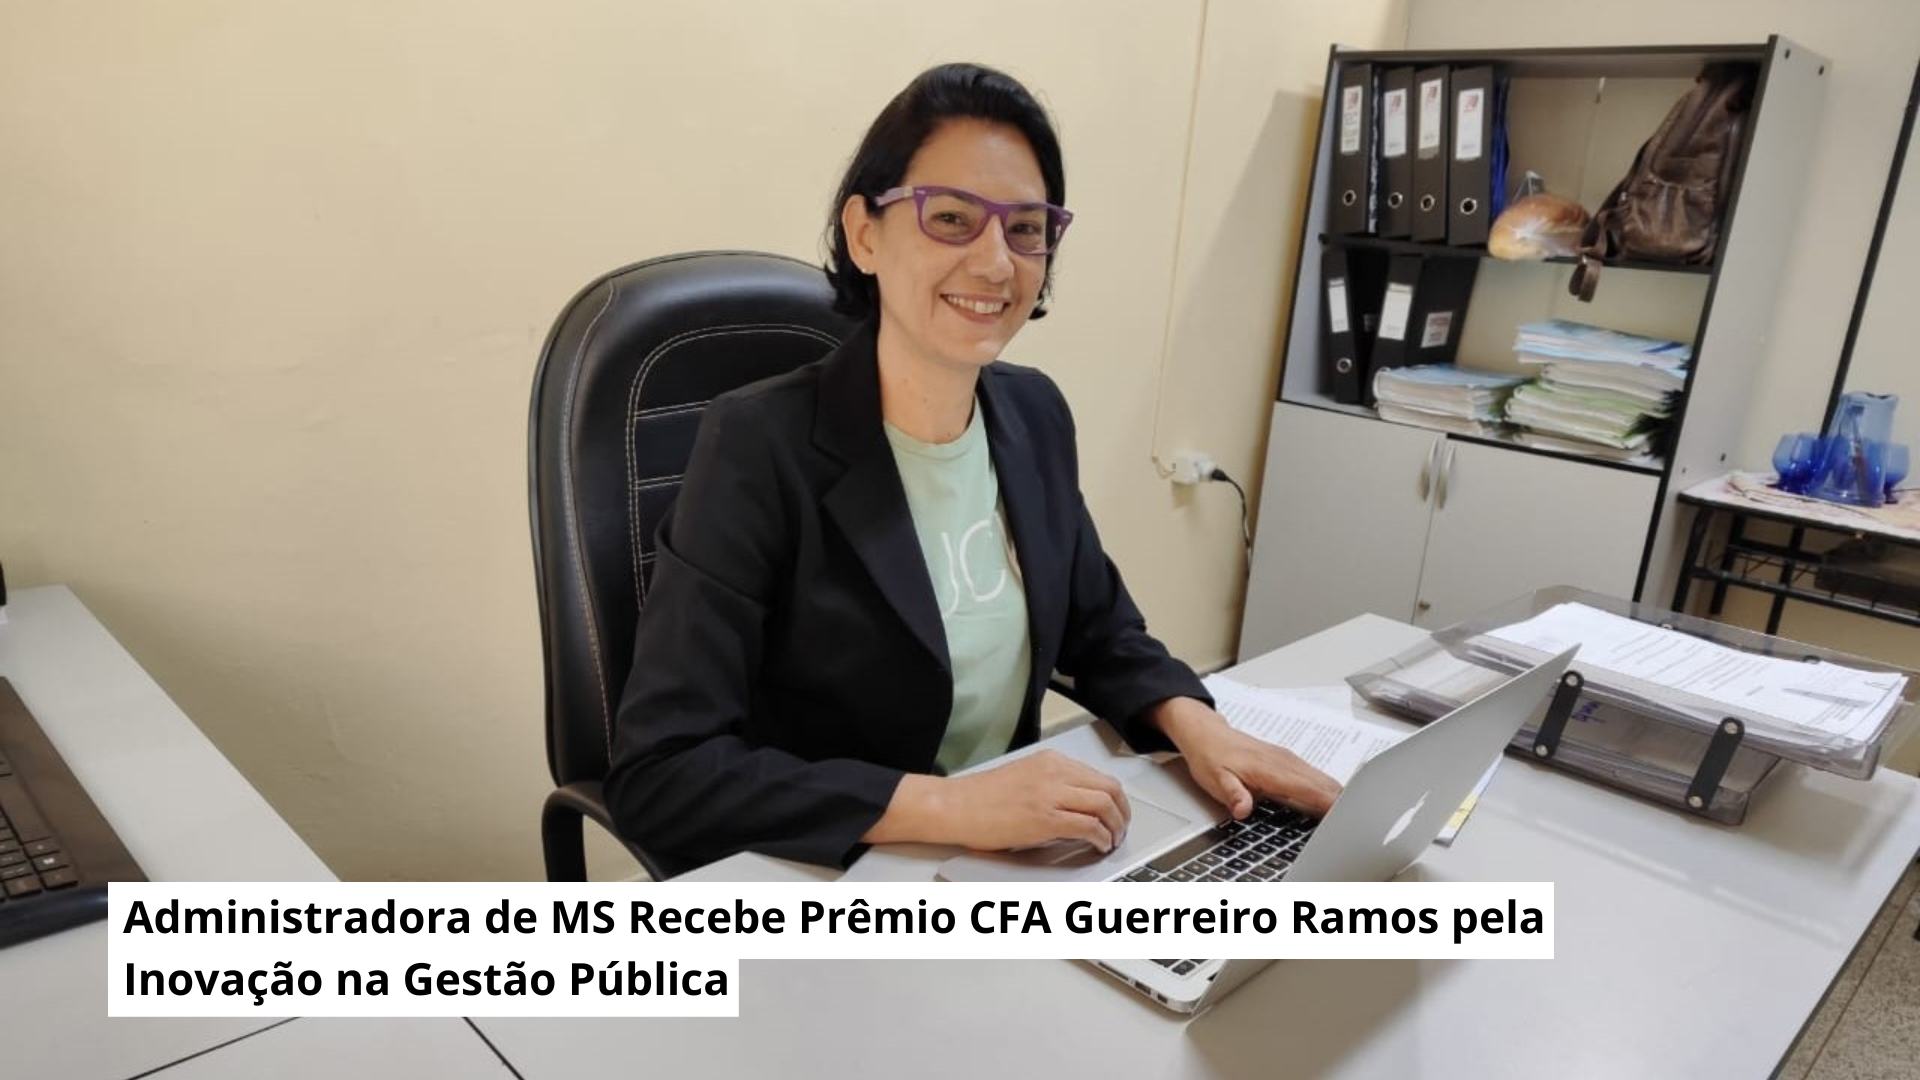 Administradora de MS Recebe Prêmio CFA Guerreiro Ramos pela Inovação na Gestão Pública